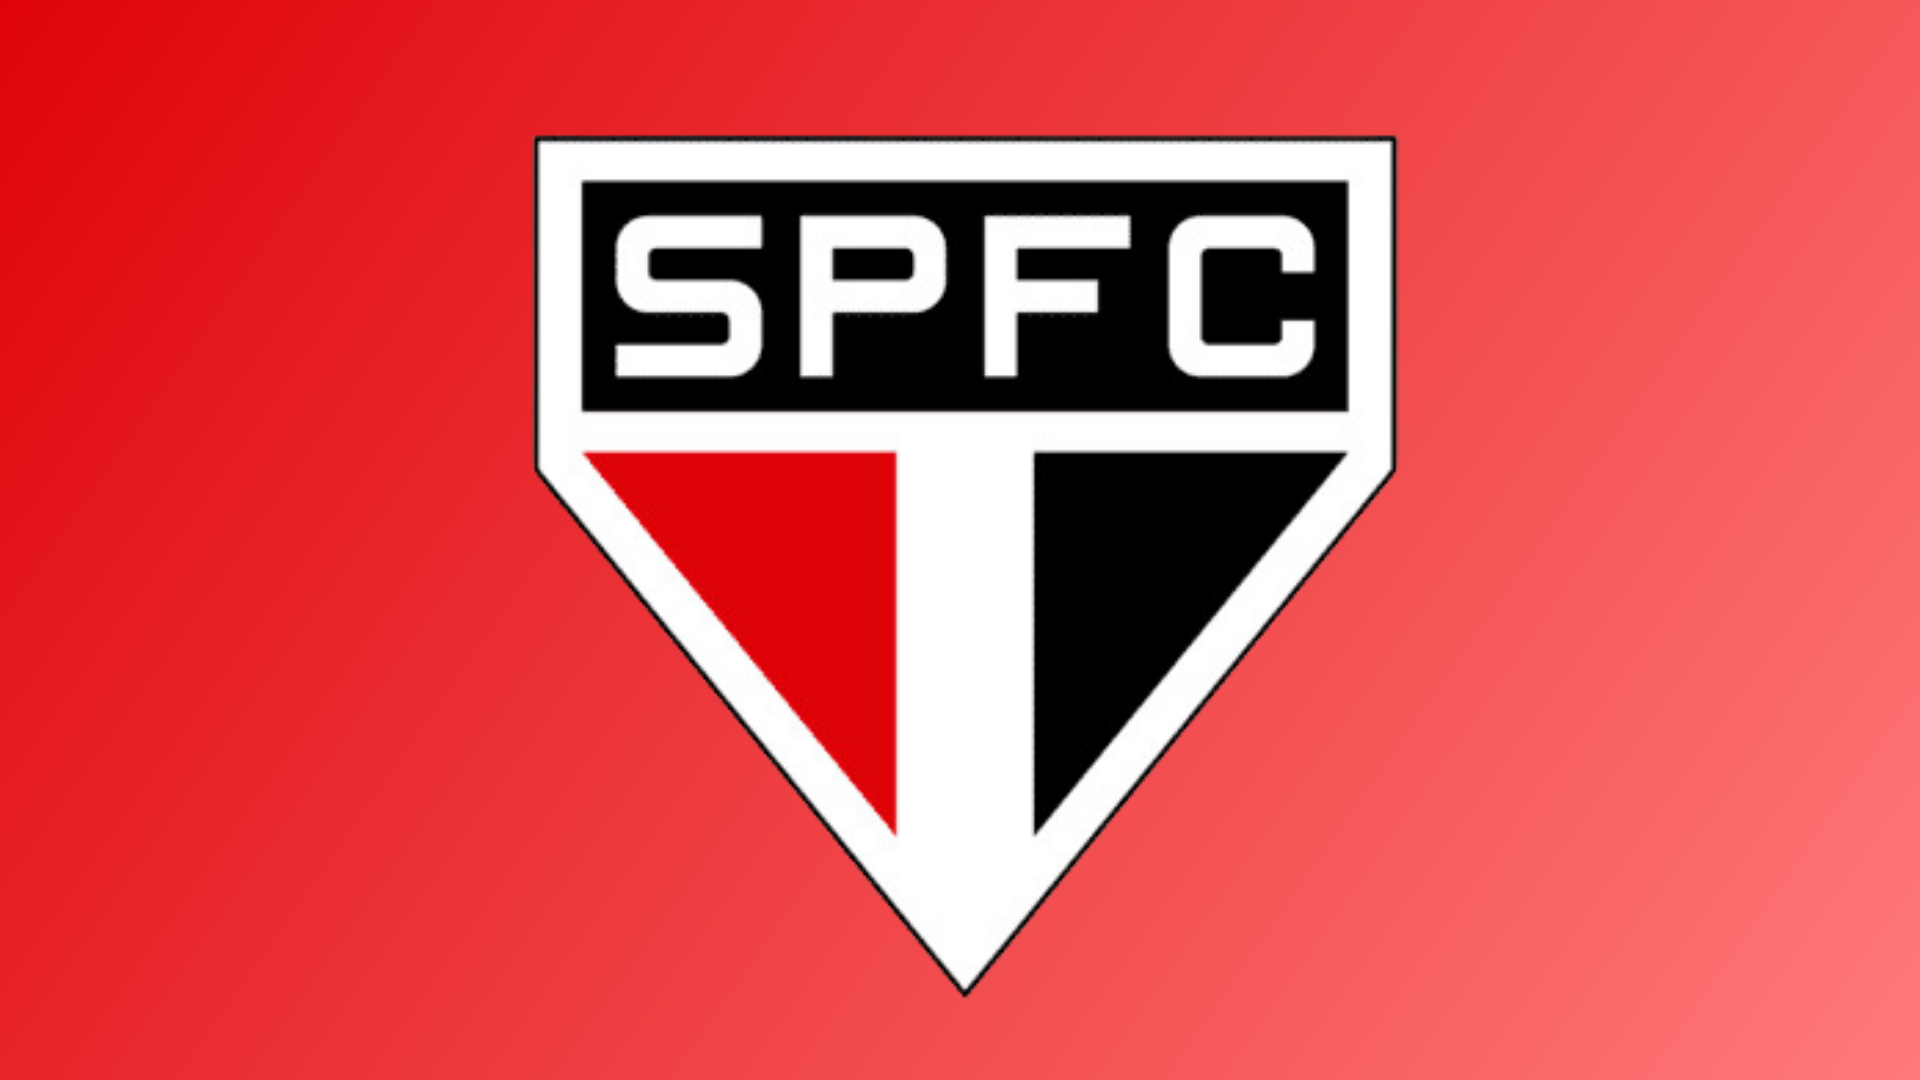 Escudo do time do São Paulo Futebol Clube